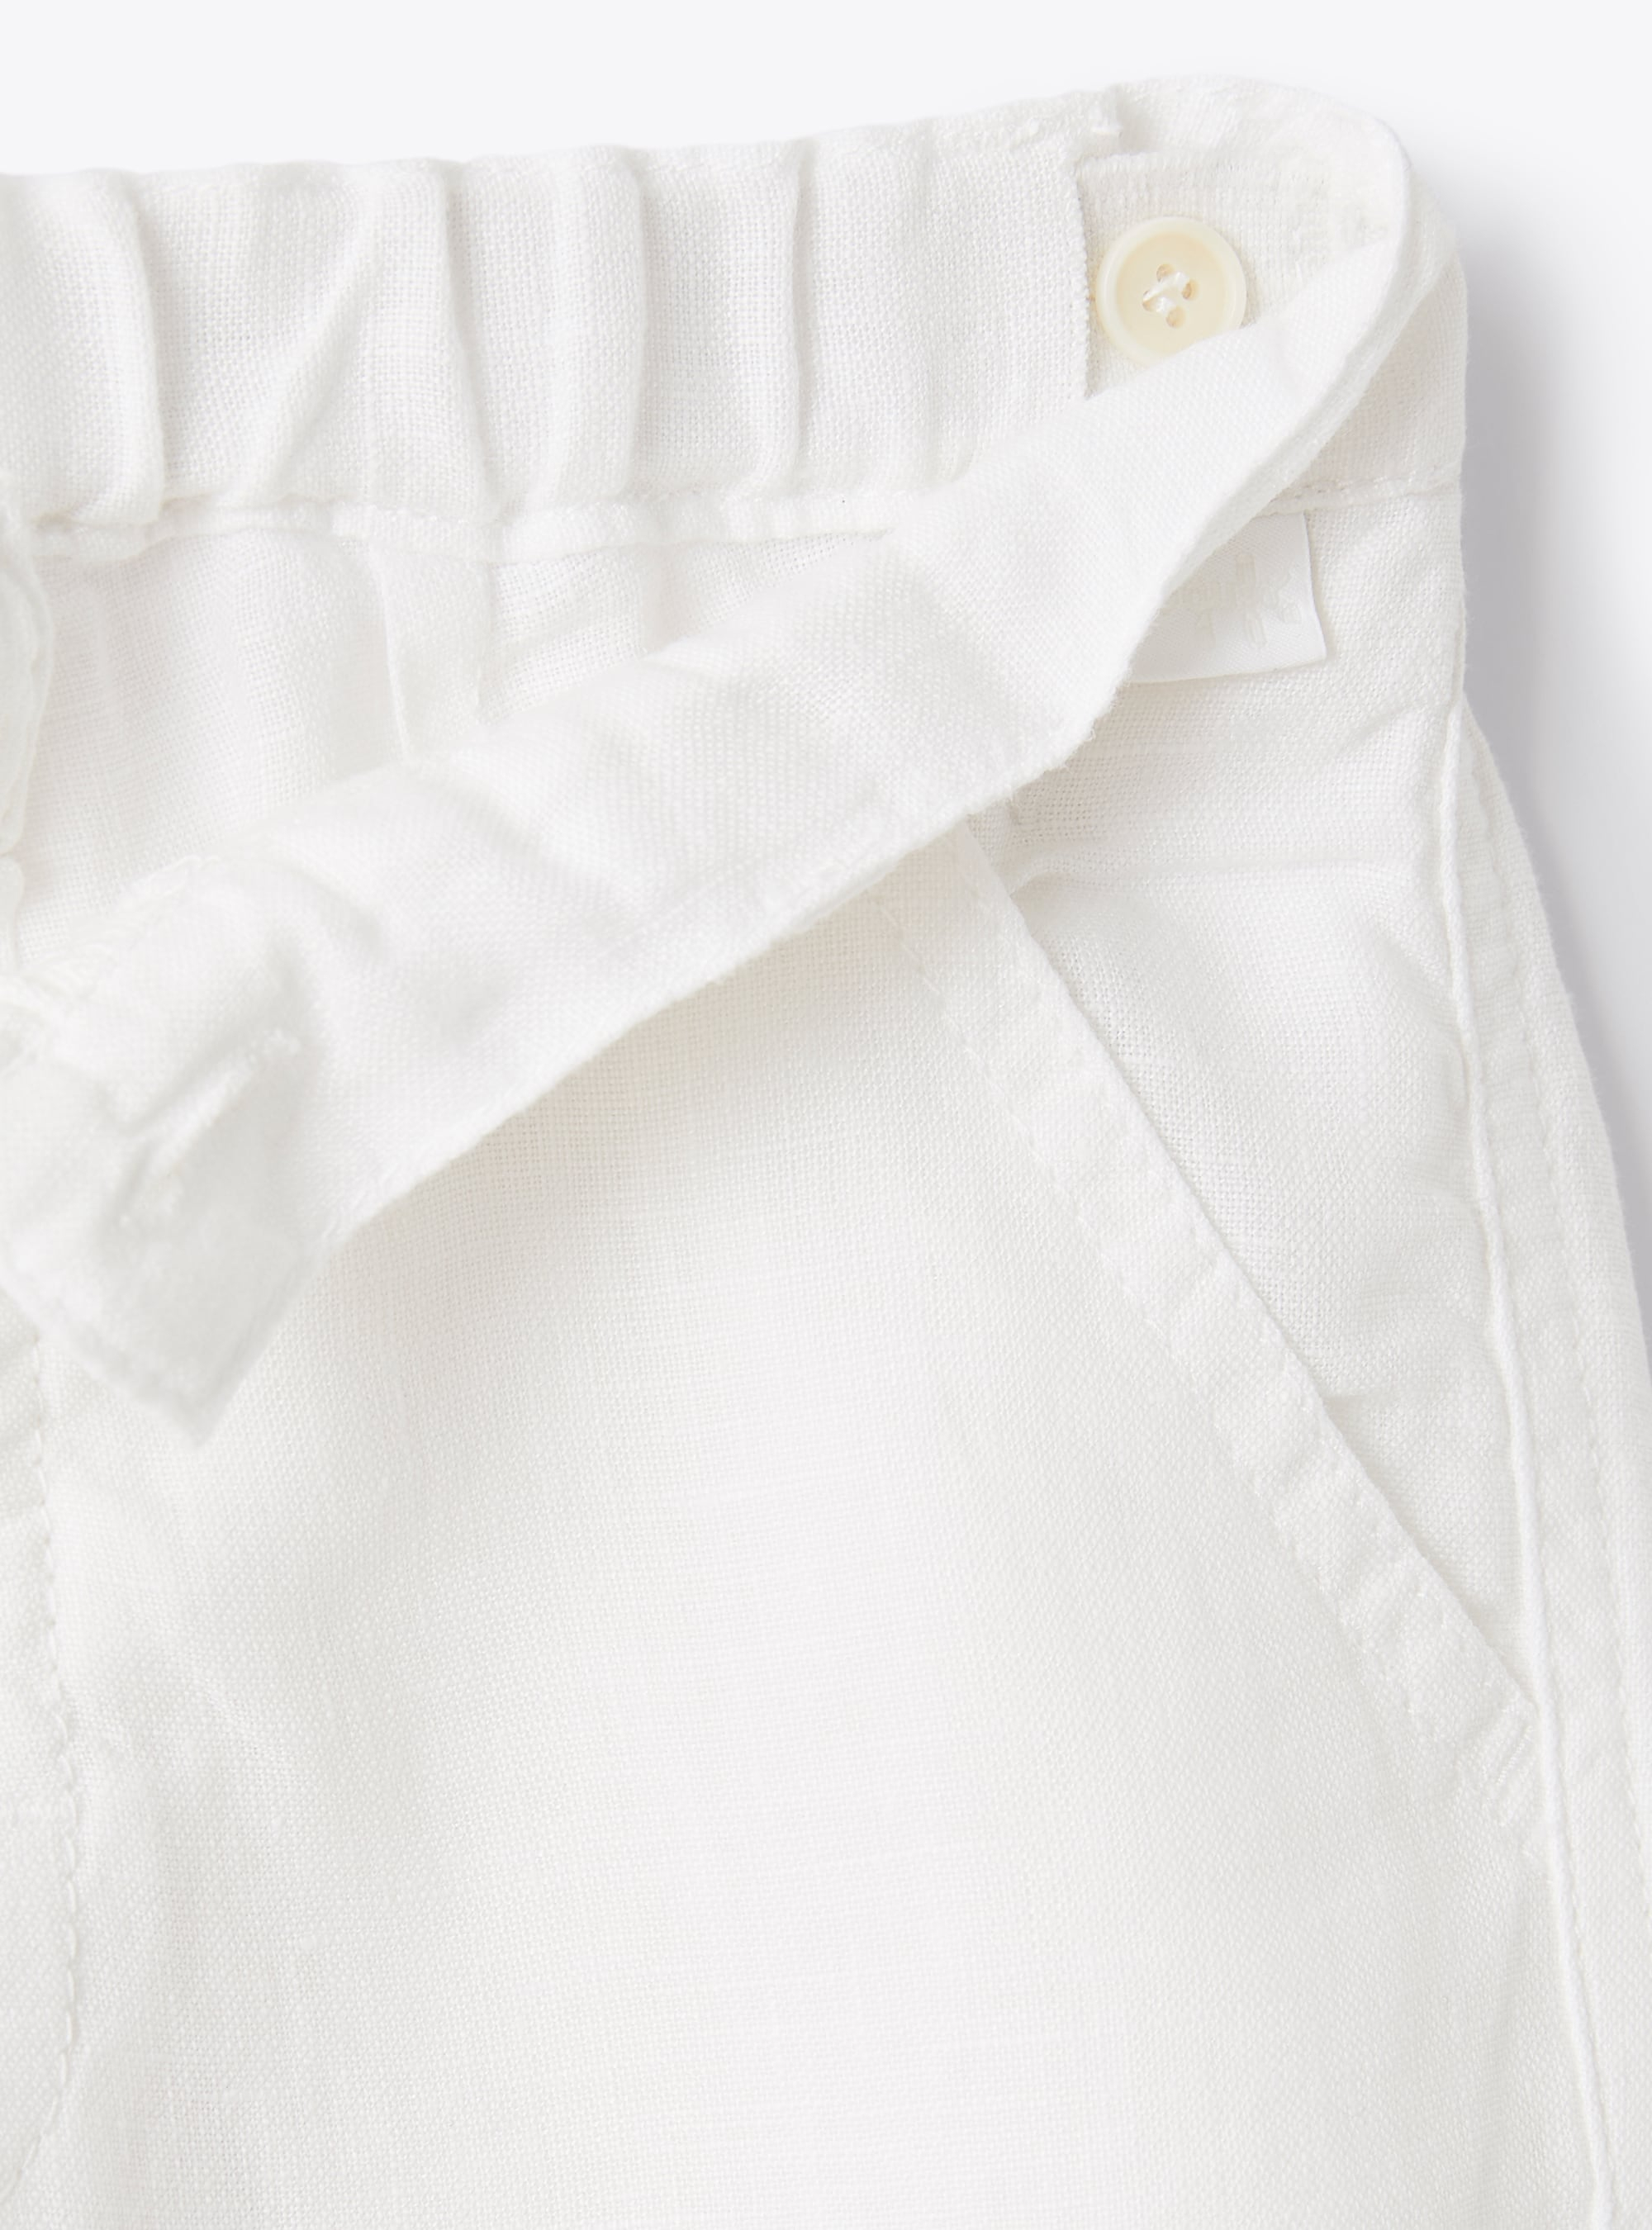 Bermuda shorts in white linen - White | Il Gufo